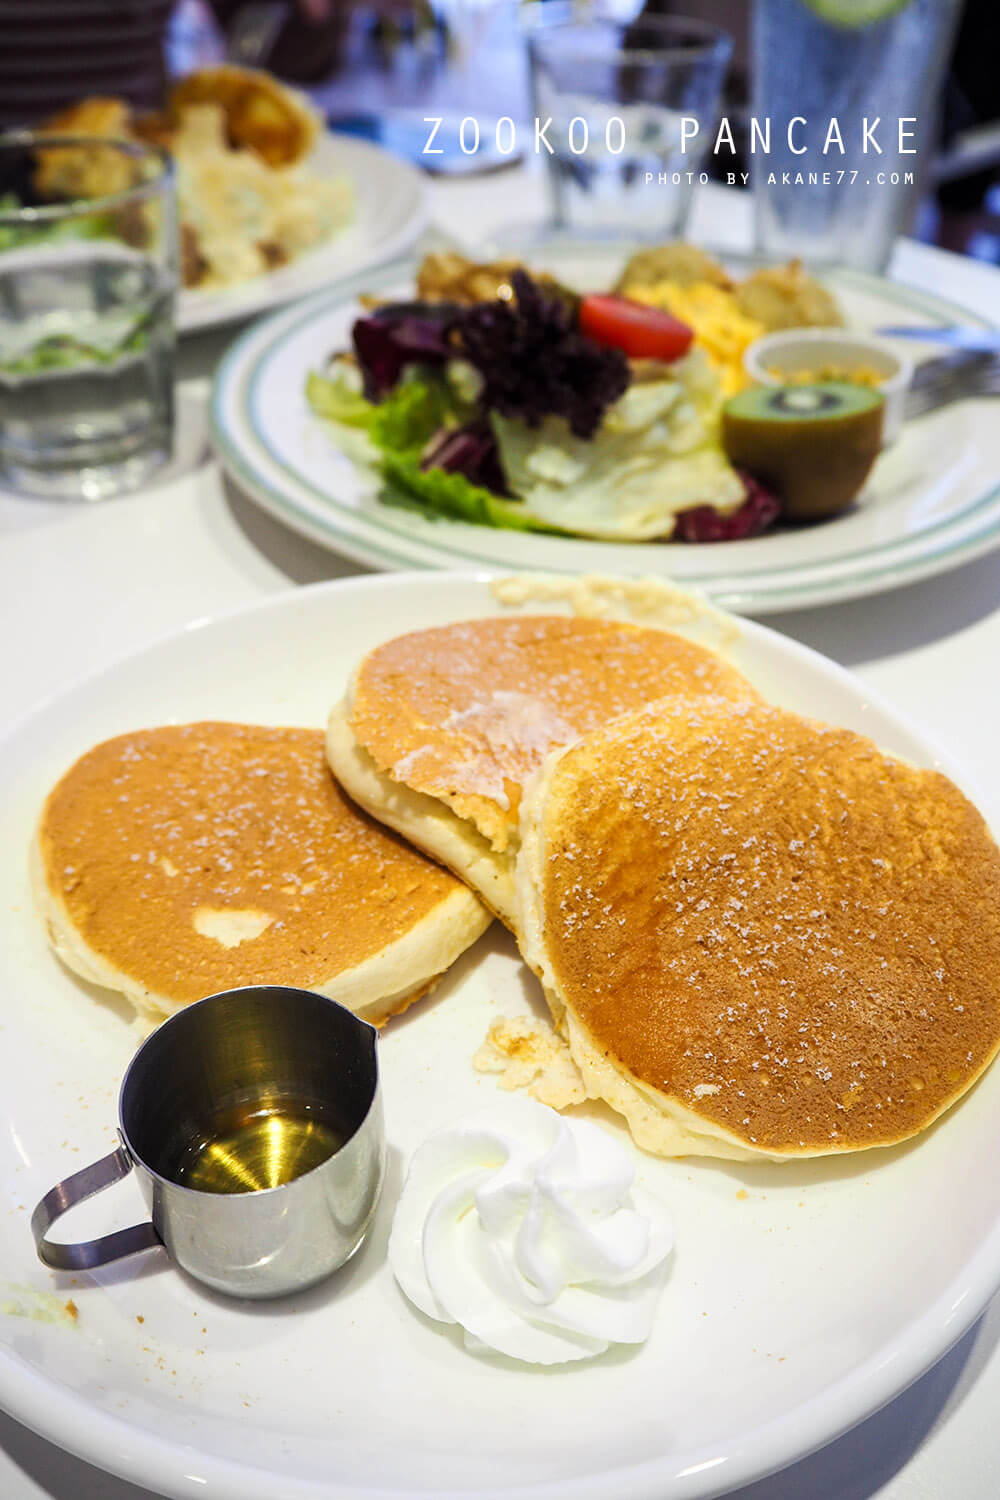 台中西屯⎮早午餐下午茶 入口鬆餅Pancake zookoo日式鬆餅